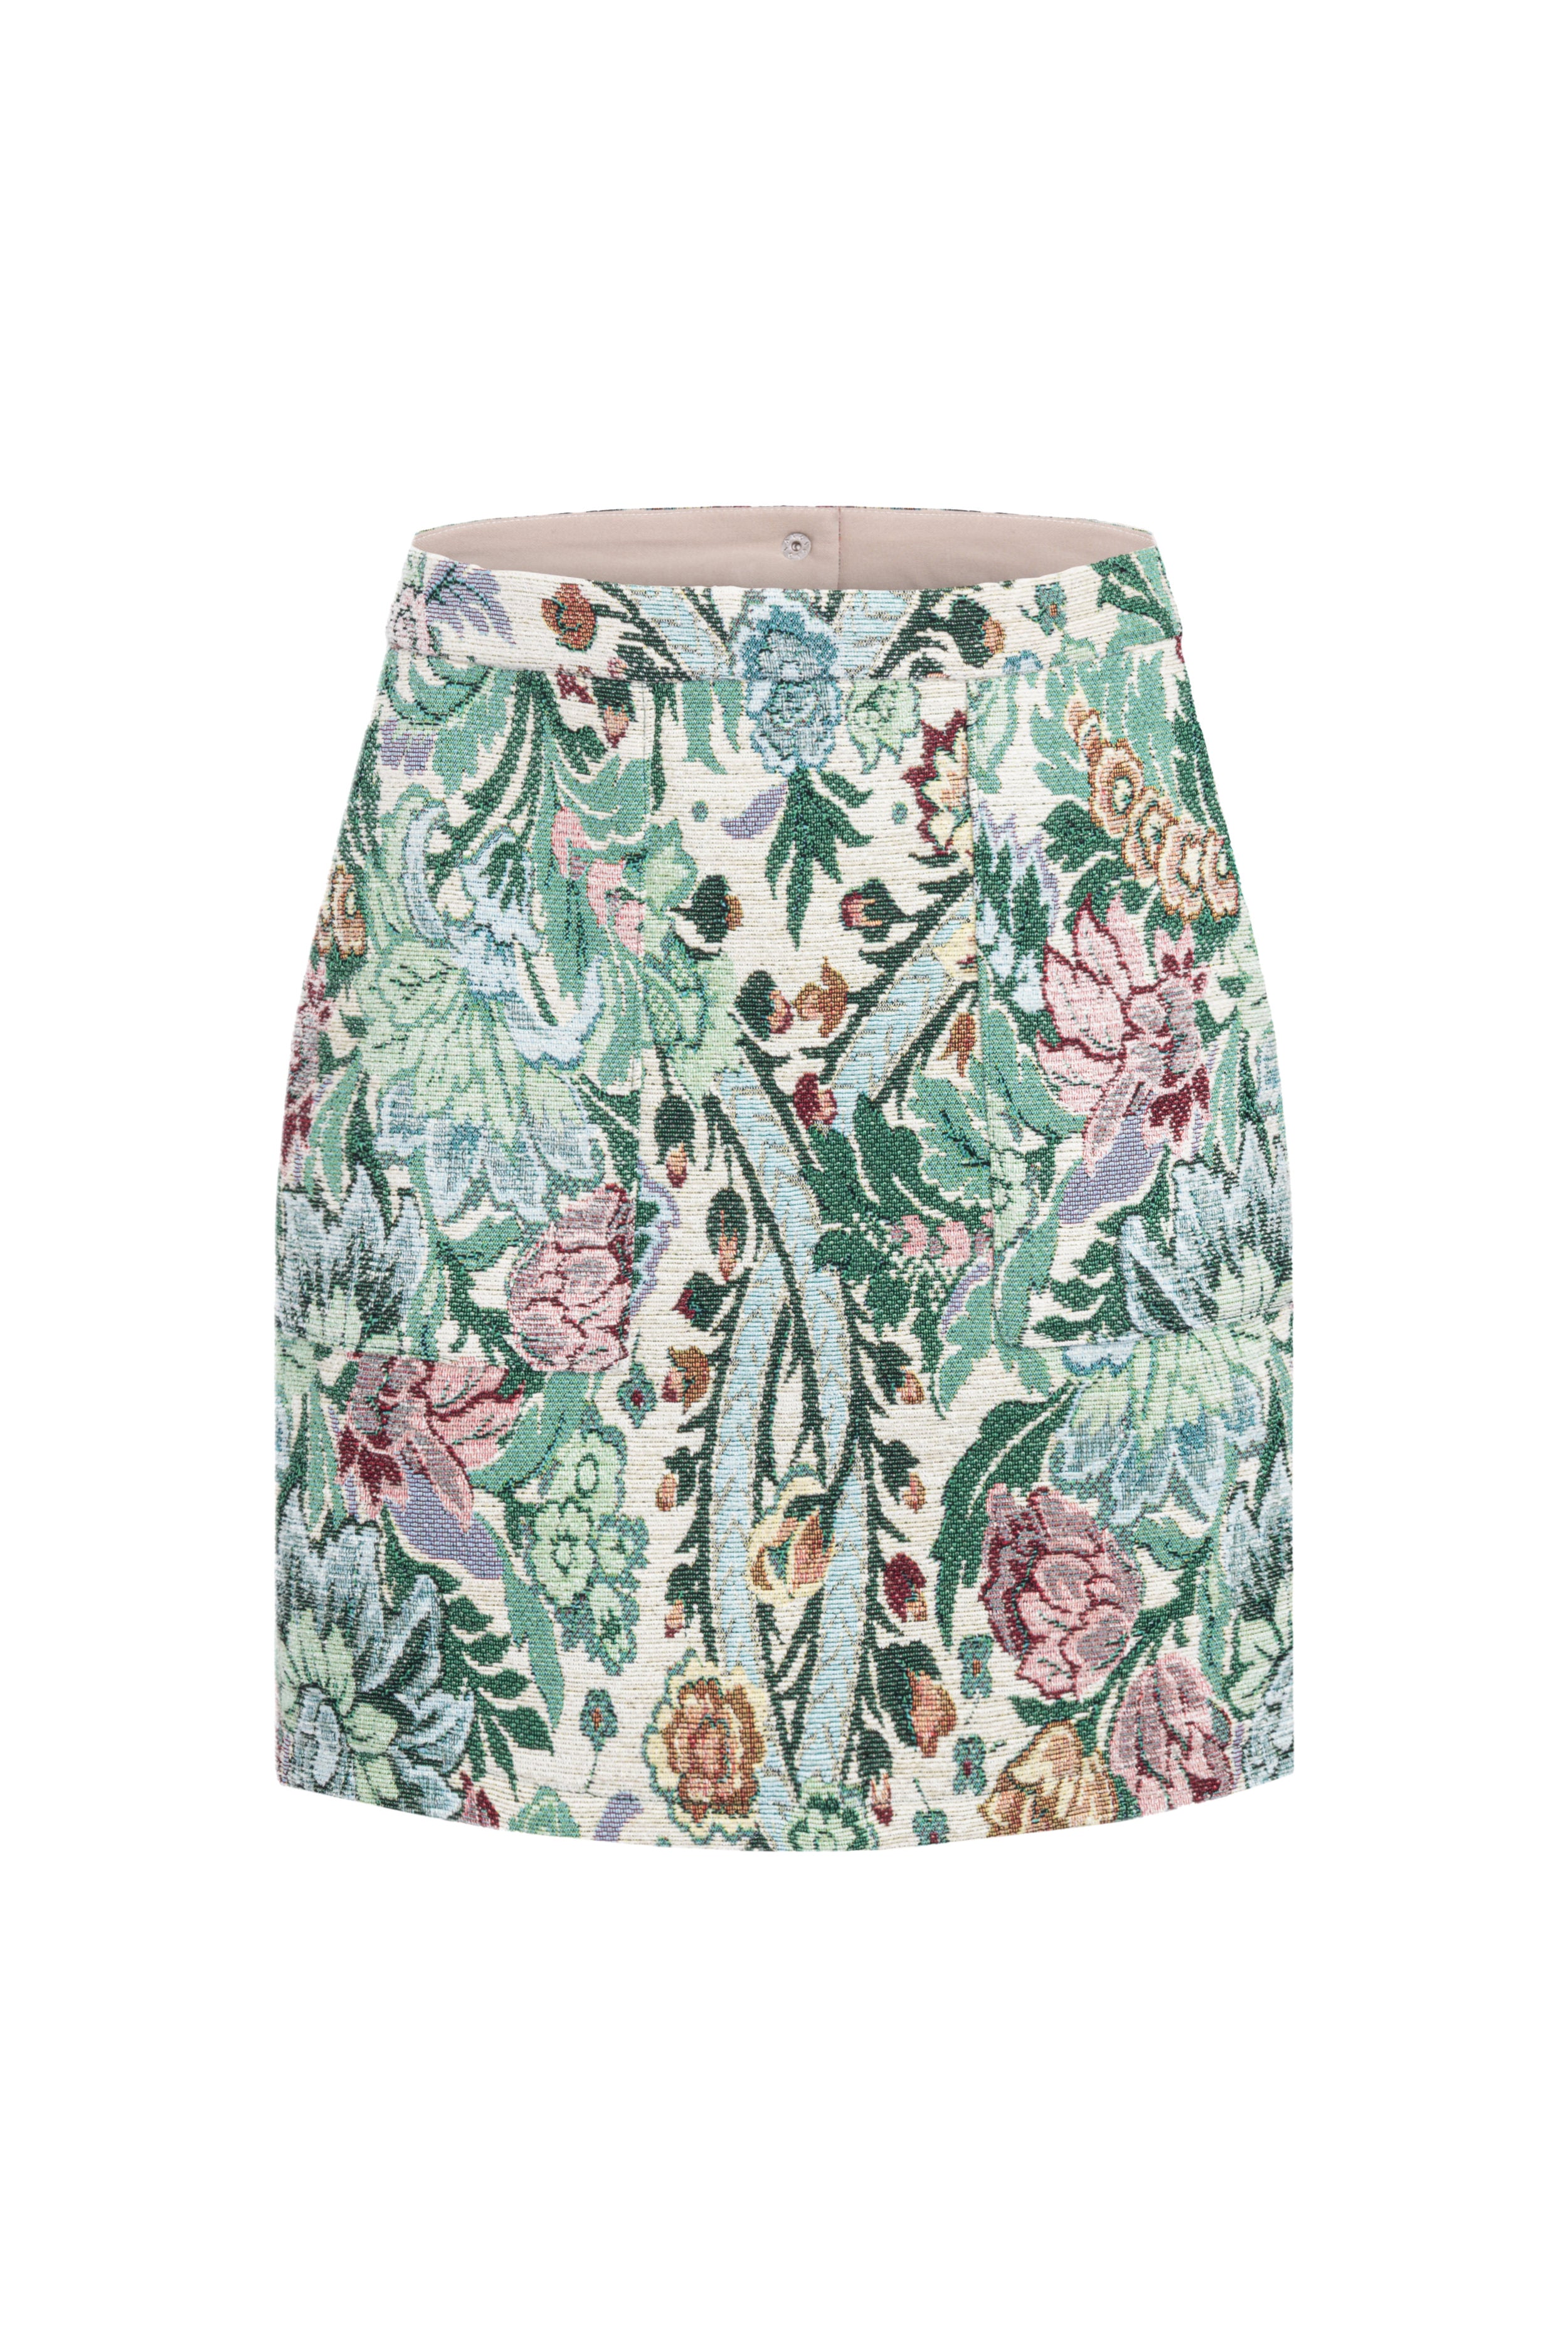 Jacquard Floral Mini Skirt